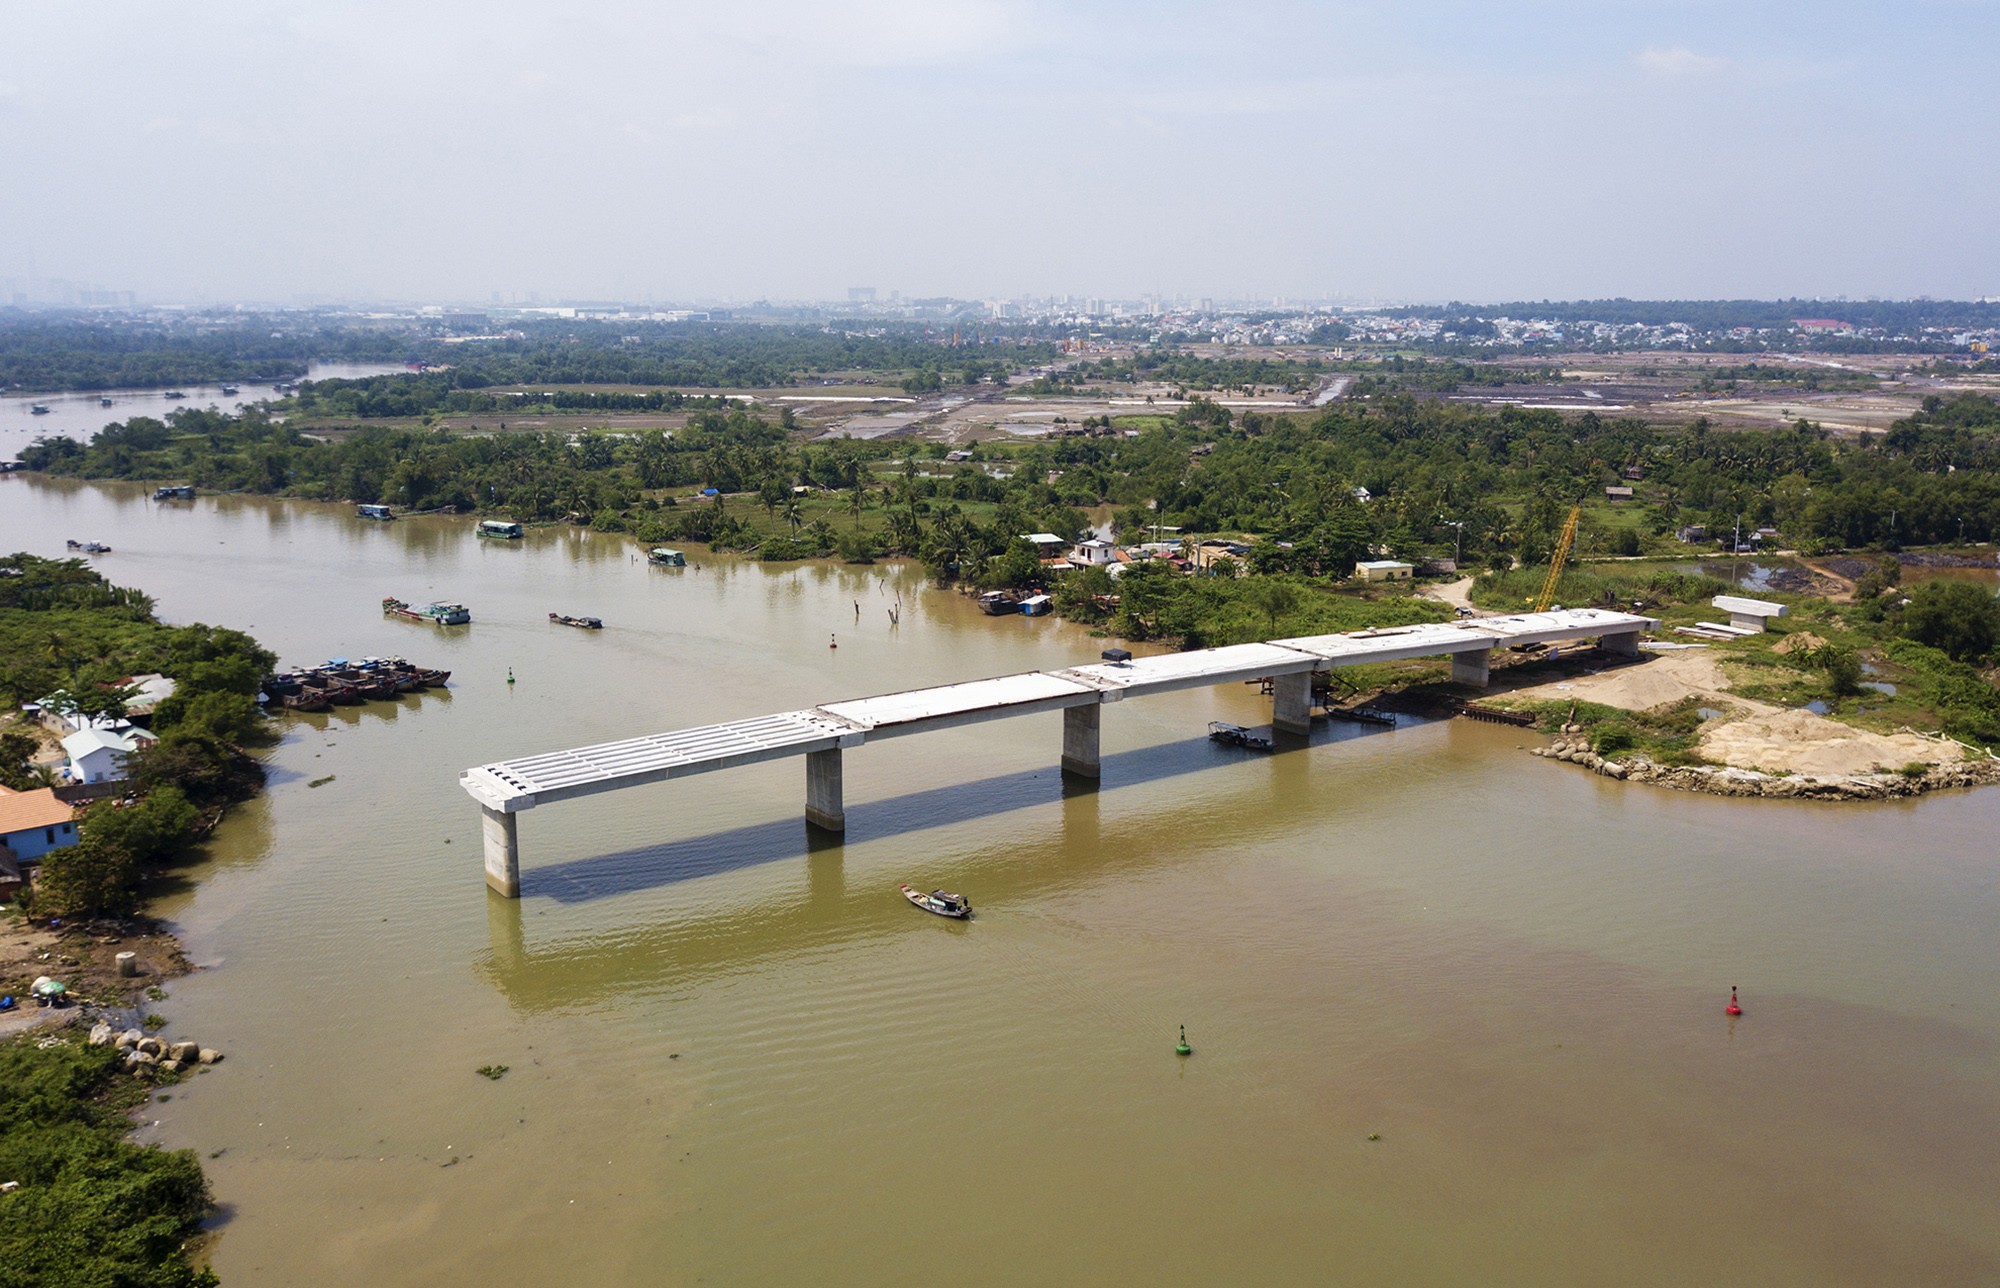 Cầu Long Đại (tên cũ là cầu Phước Thiện) bắc qua sông Tắc - một nhánh của sông Đồng Nai, nối phường Long Bình với Long Phước, TP Thủ Đức (TP.HCM). Dự án được phê duyệt năm 2015, tổng mức đầu tư ban đầu hơn 353 tỷ đồng từ nguồn ngân sách của thành phố.